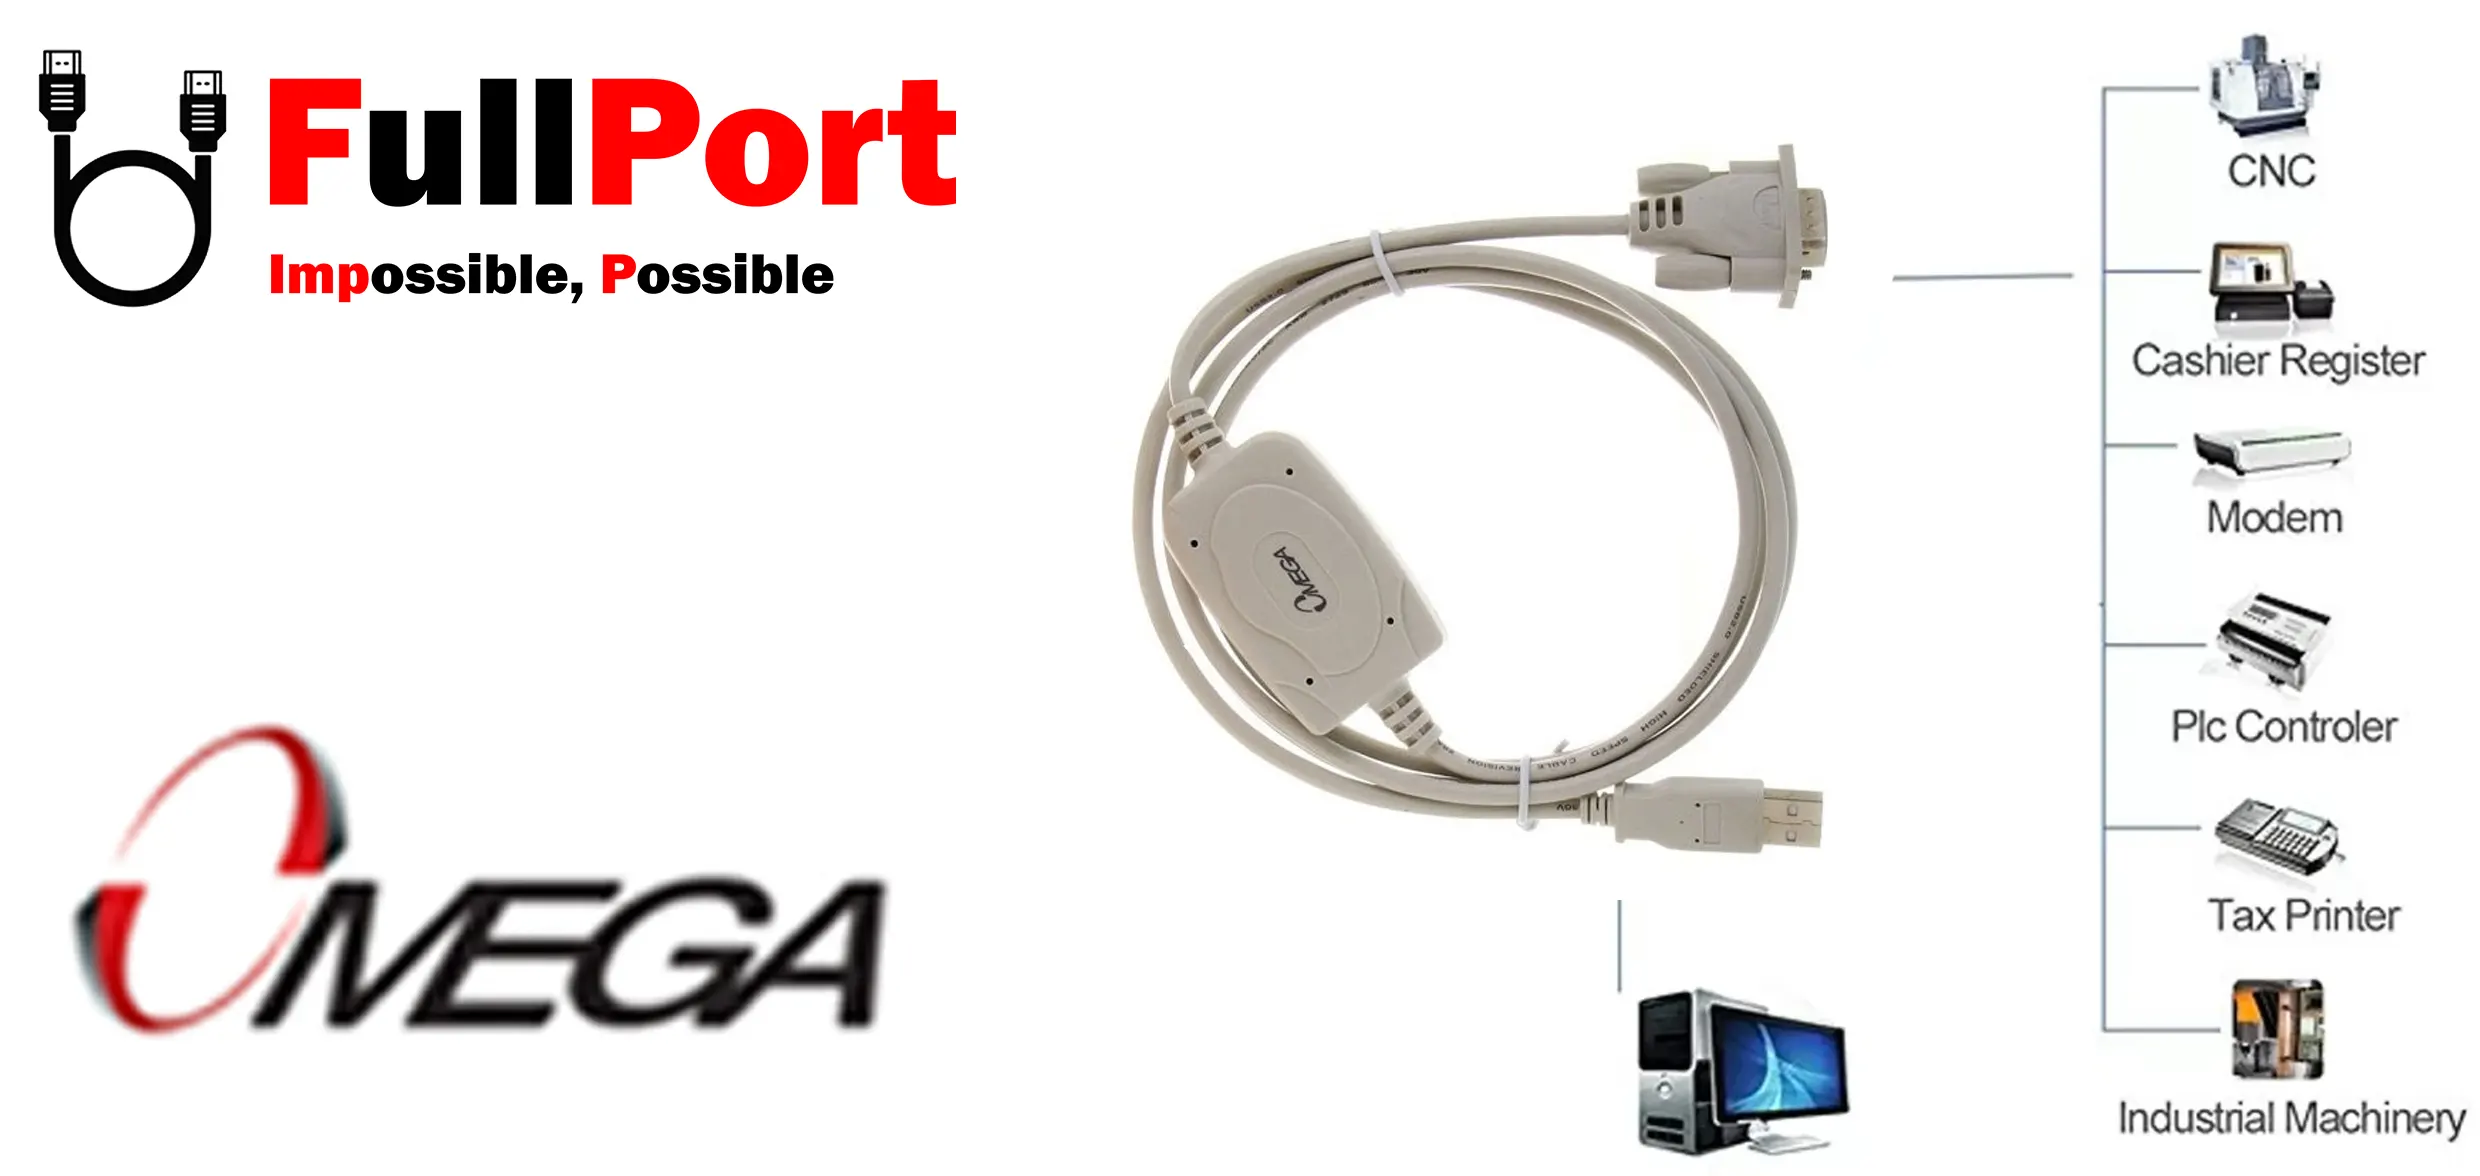 خرید مبدل USB2.0 به RS232 اُمگا مدل OMEGA USR2309 از فروشگاه اینترنتی فول پورت